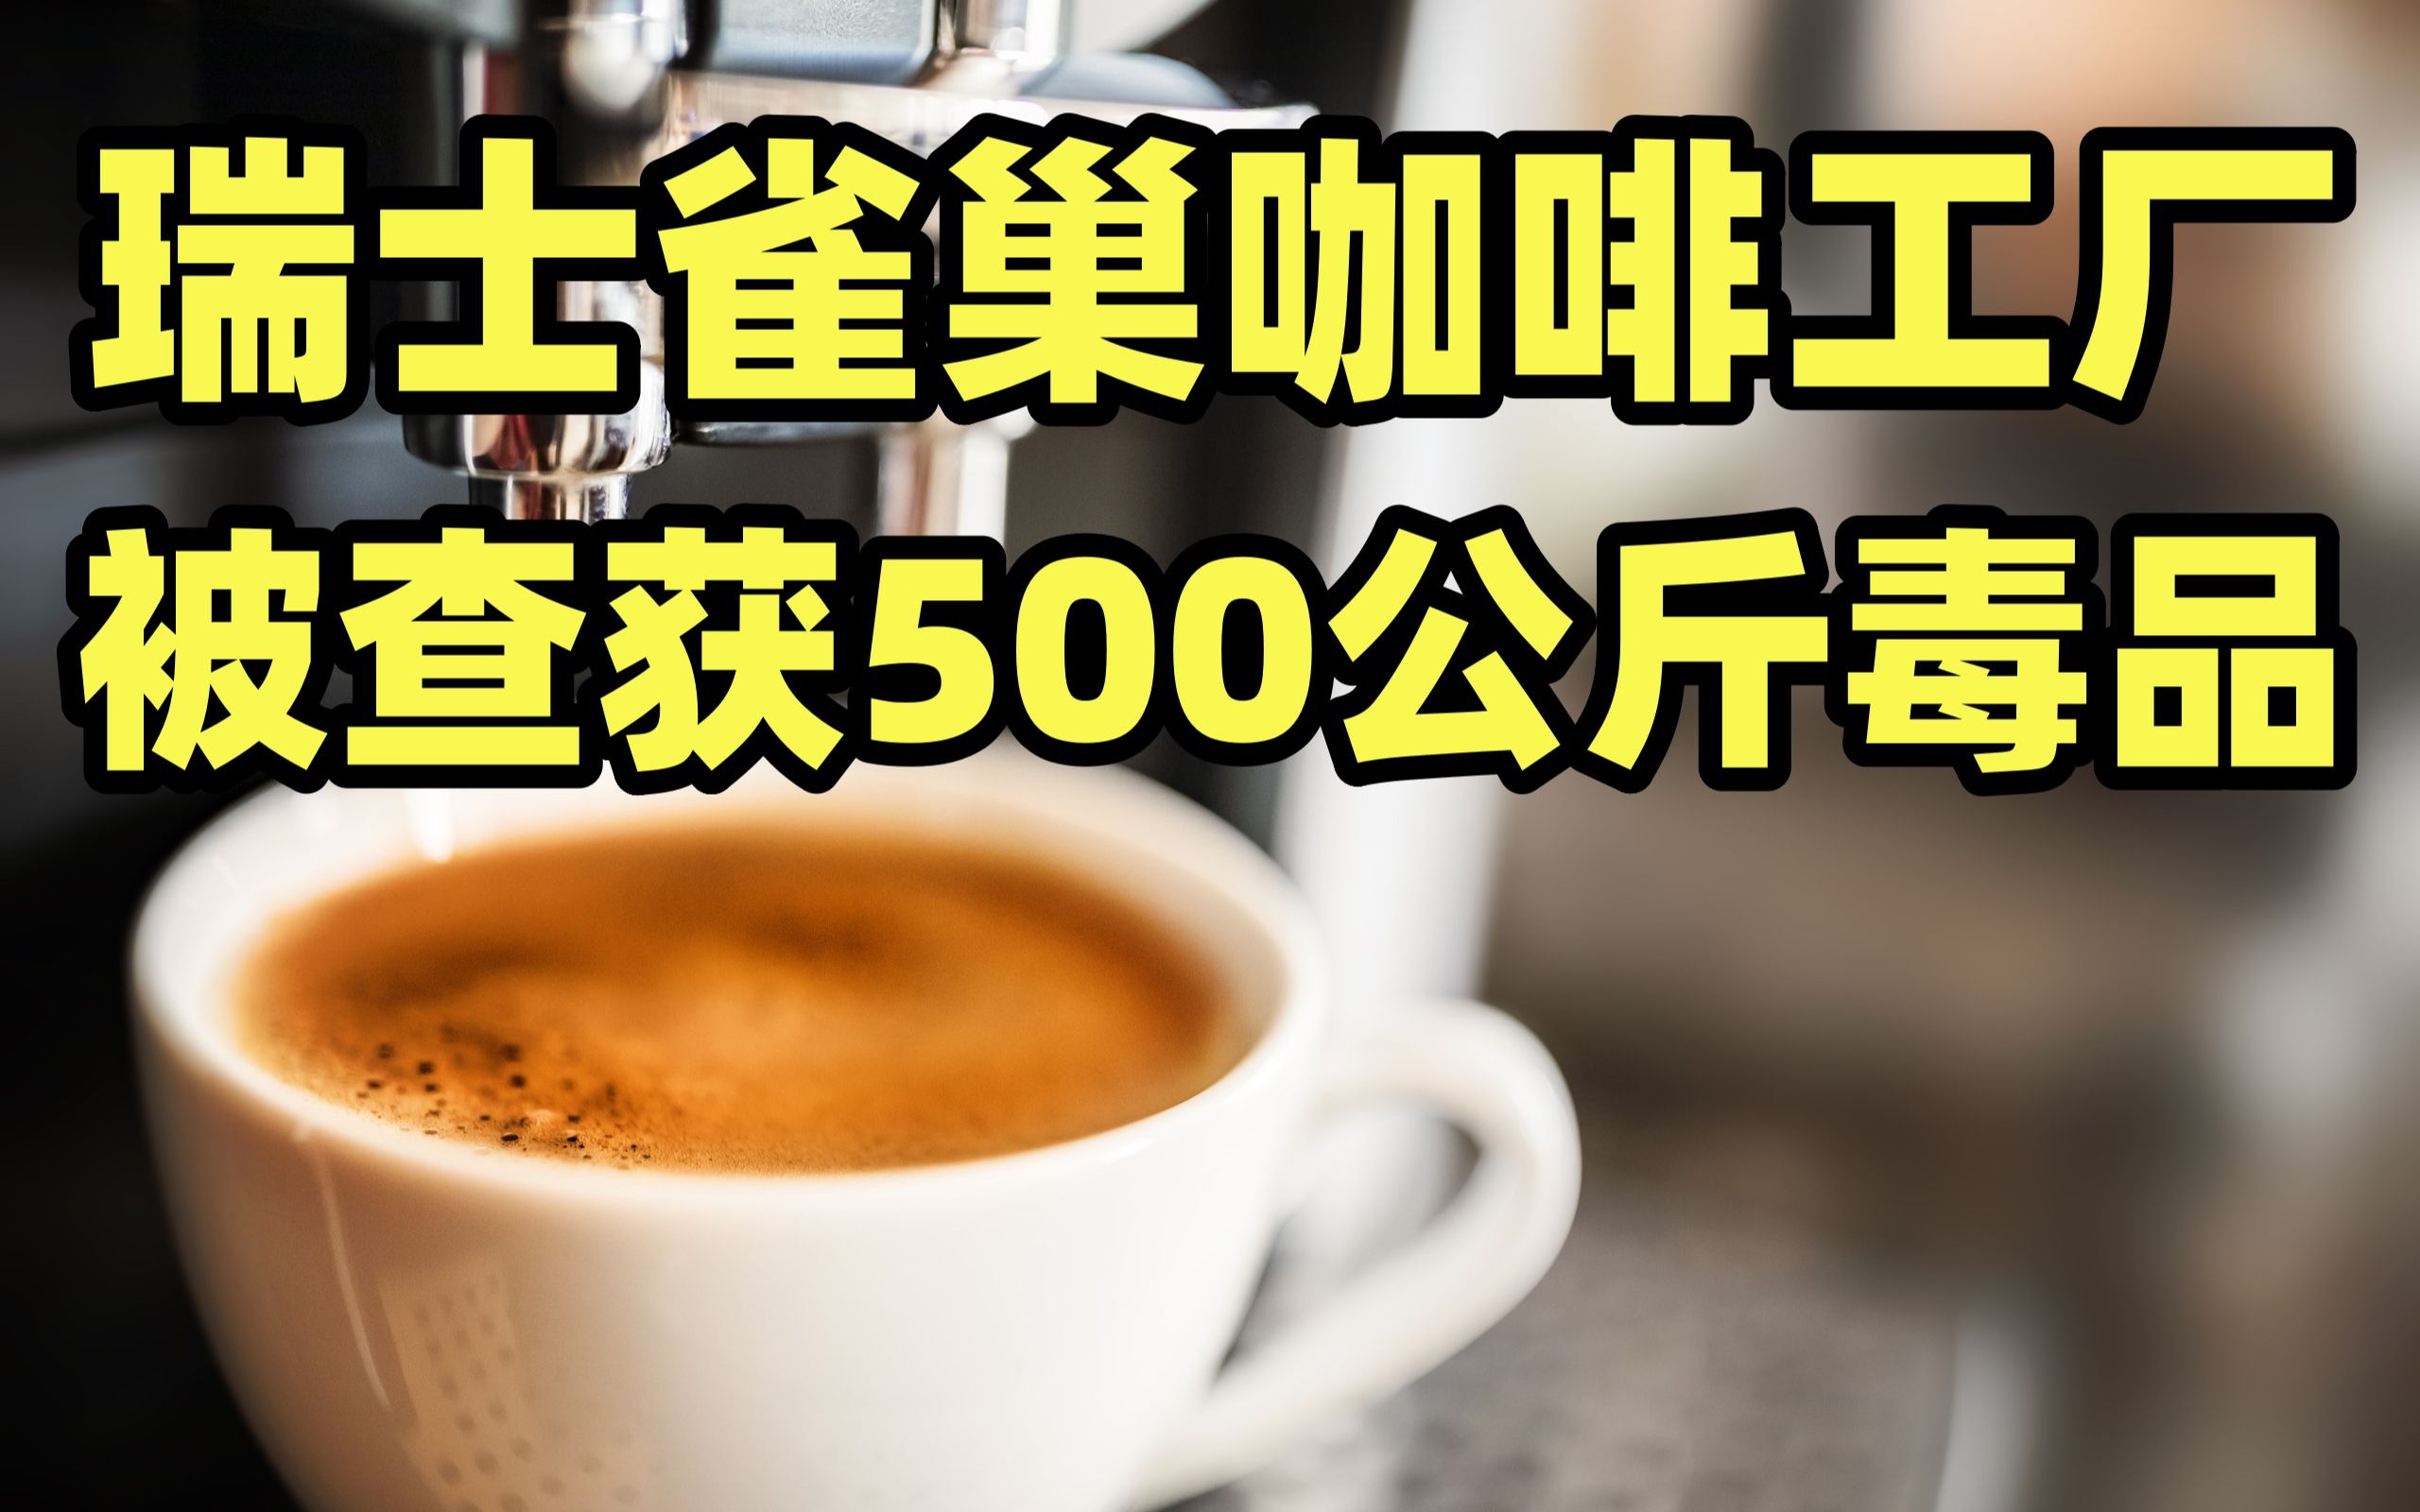 雀巢咖啡工厂被查获500公斤毒品 瑞士警方：不排除企业协同作案